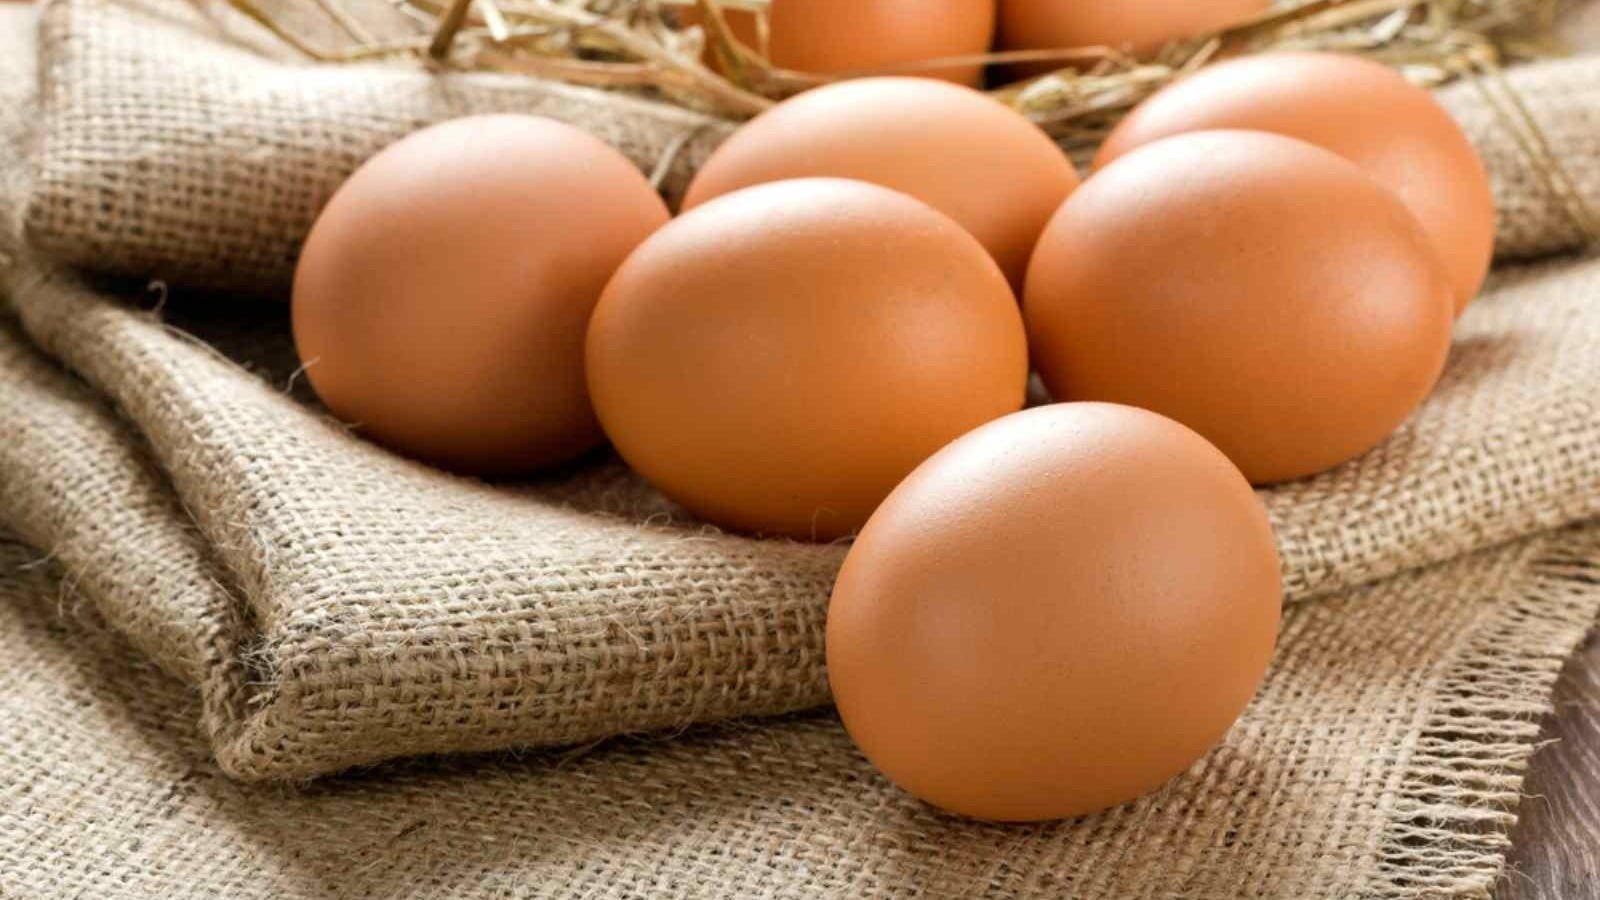 Trong trứng có chứa nhiều protein, chất béo lành mạnh và các loại vitamin tốt cho sức khỏe